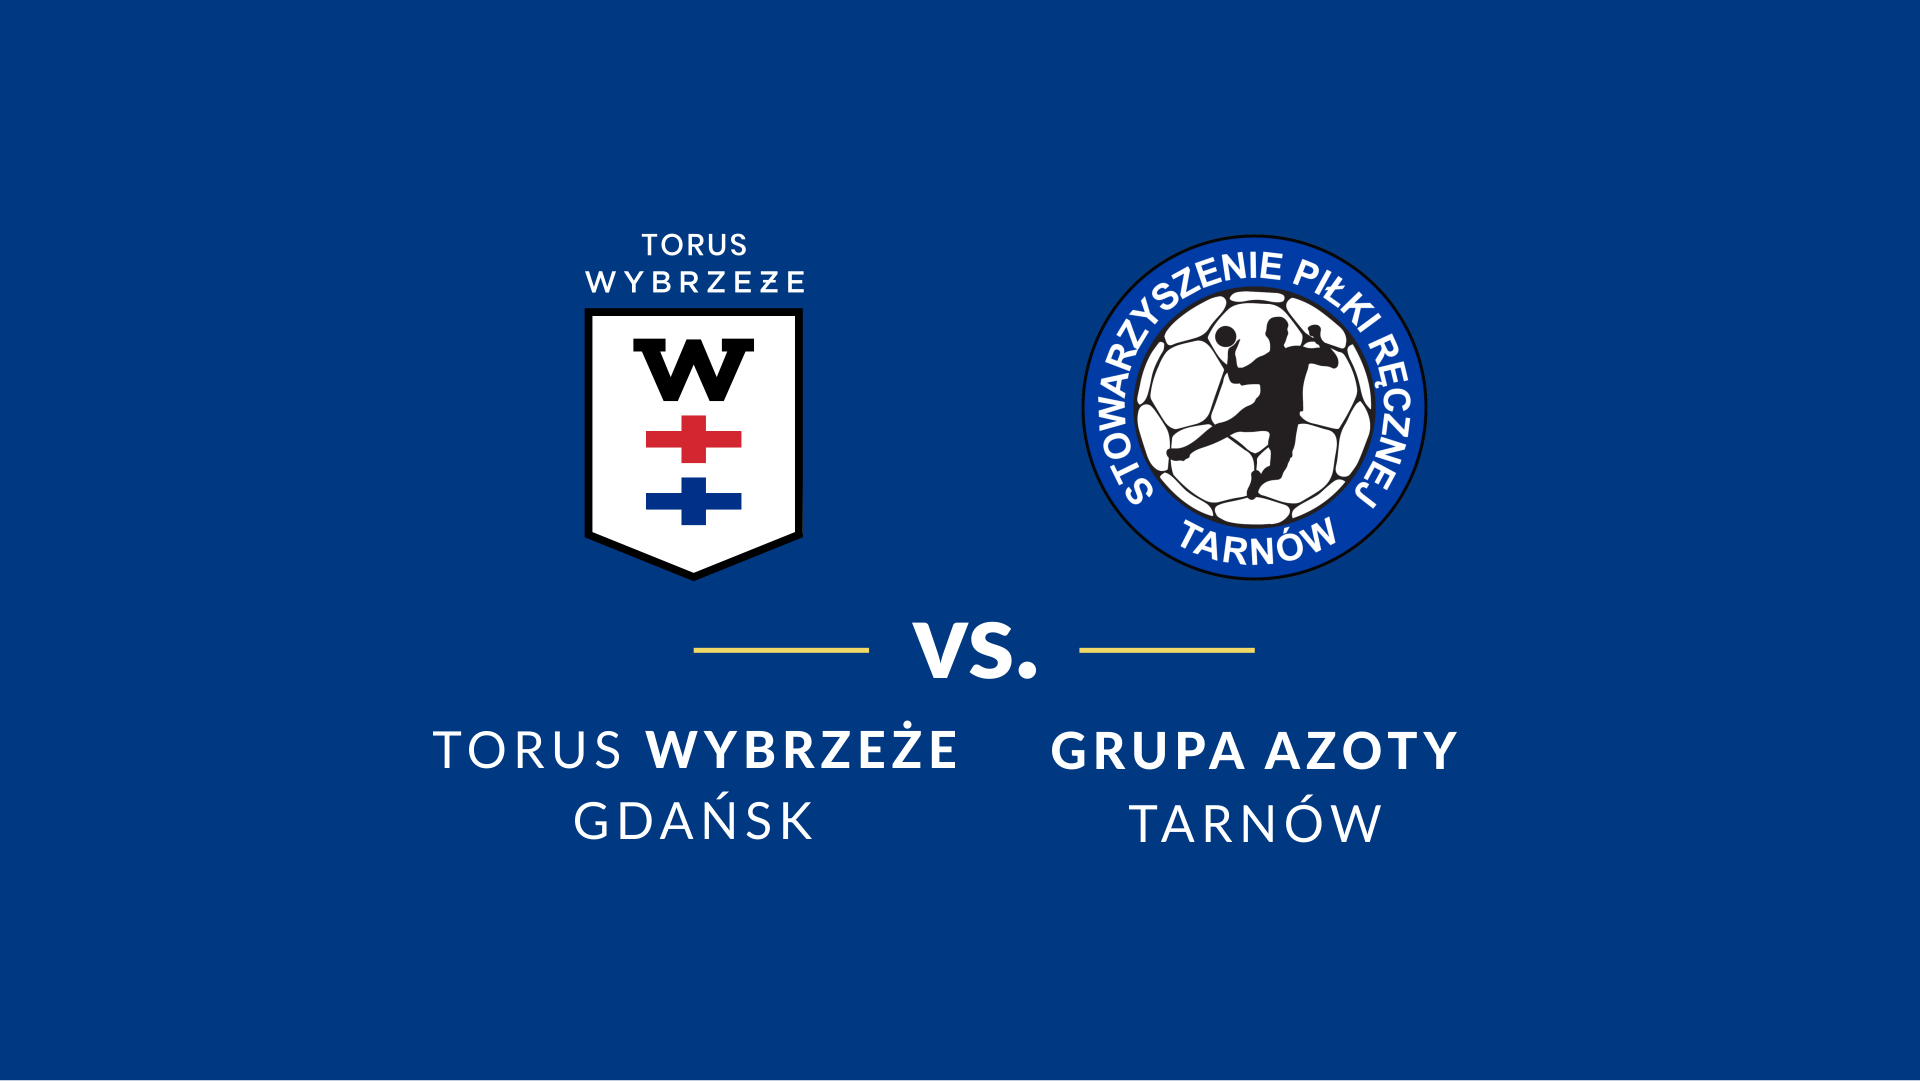 baner - logotypy Grupa Azoty Tarnów i Torus Wybrzeże Gdańsk